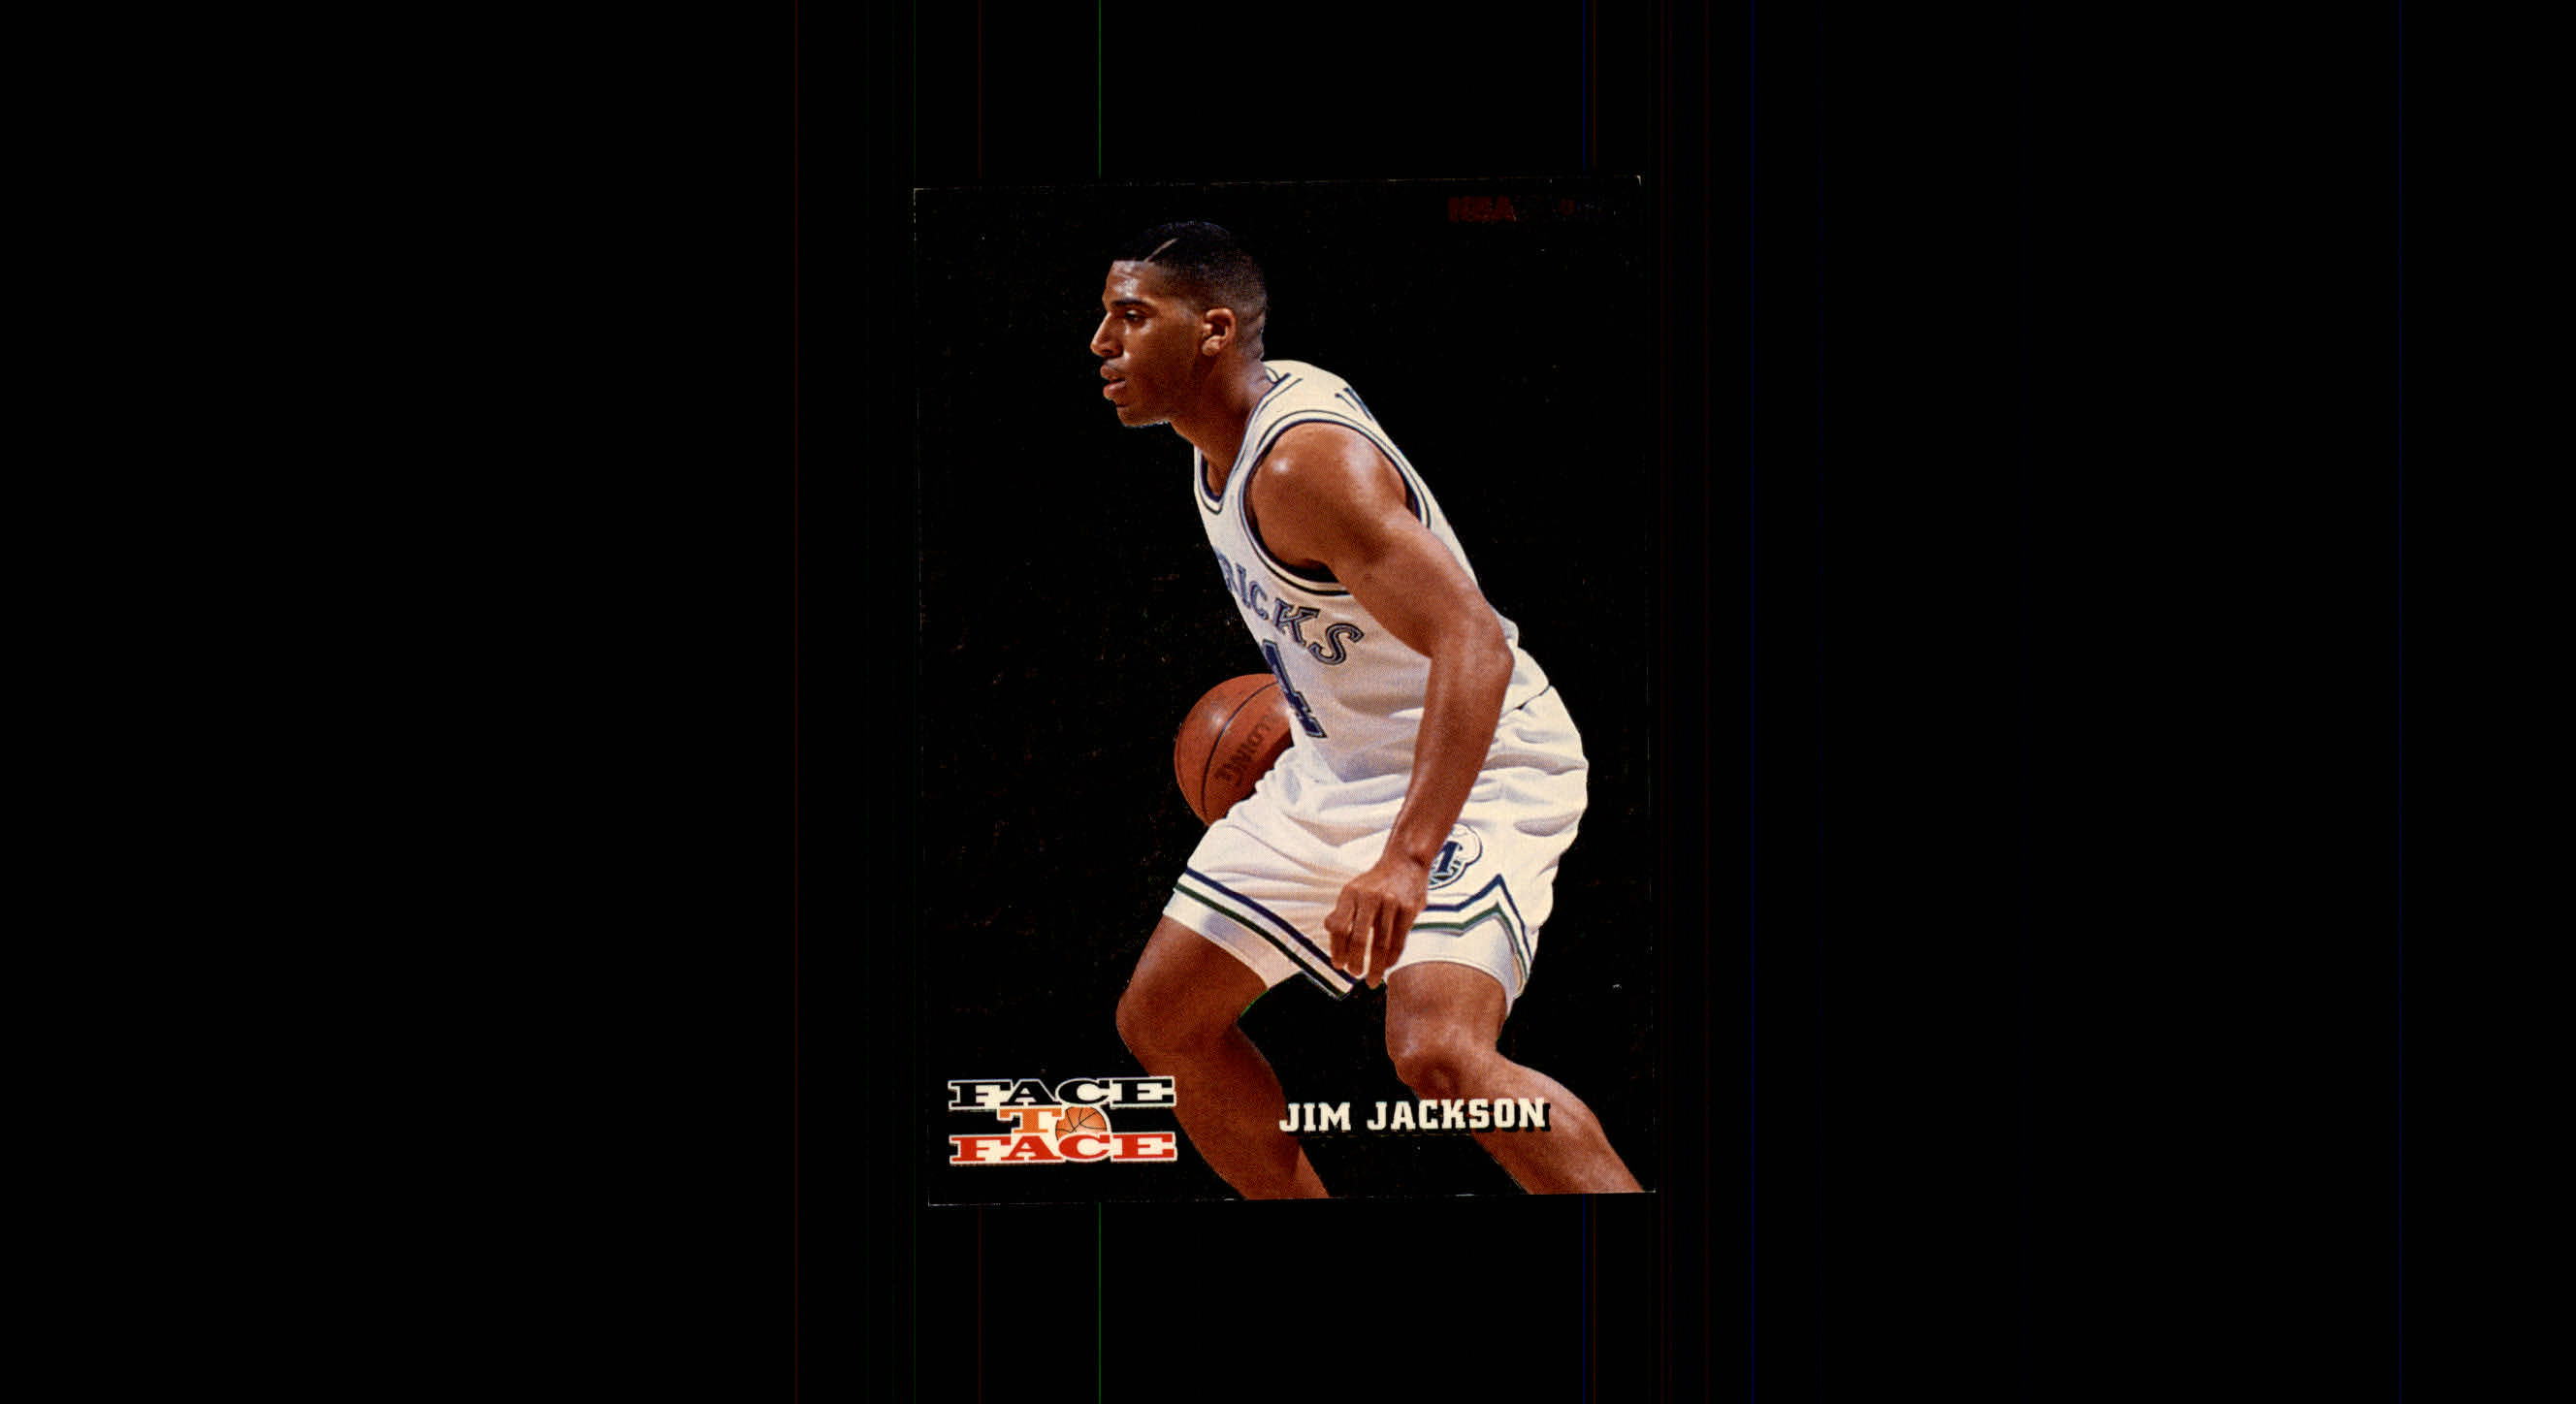 1993-94 Hoops Face to Face #4 Jim Jackson/Clyde Drexler